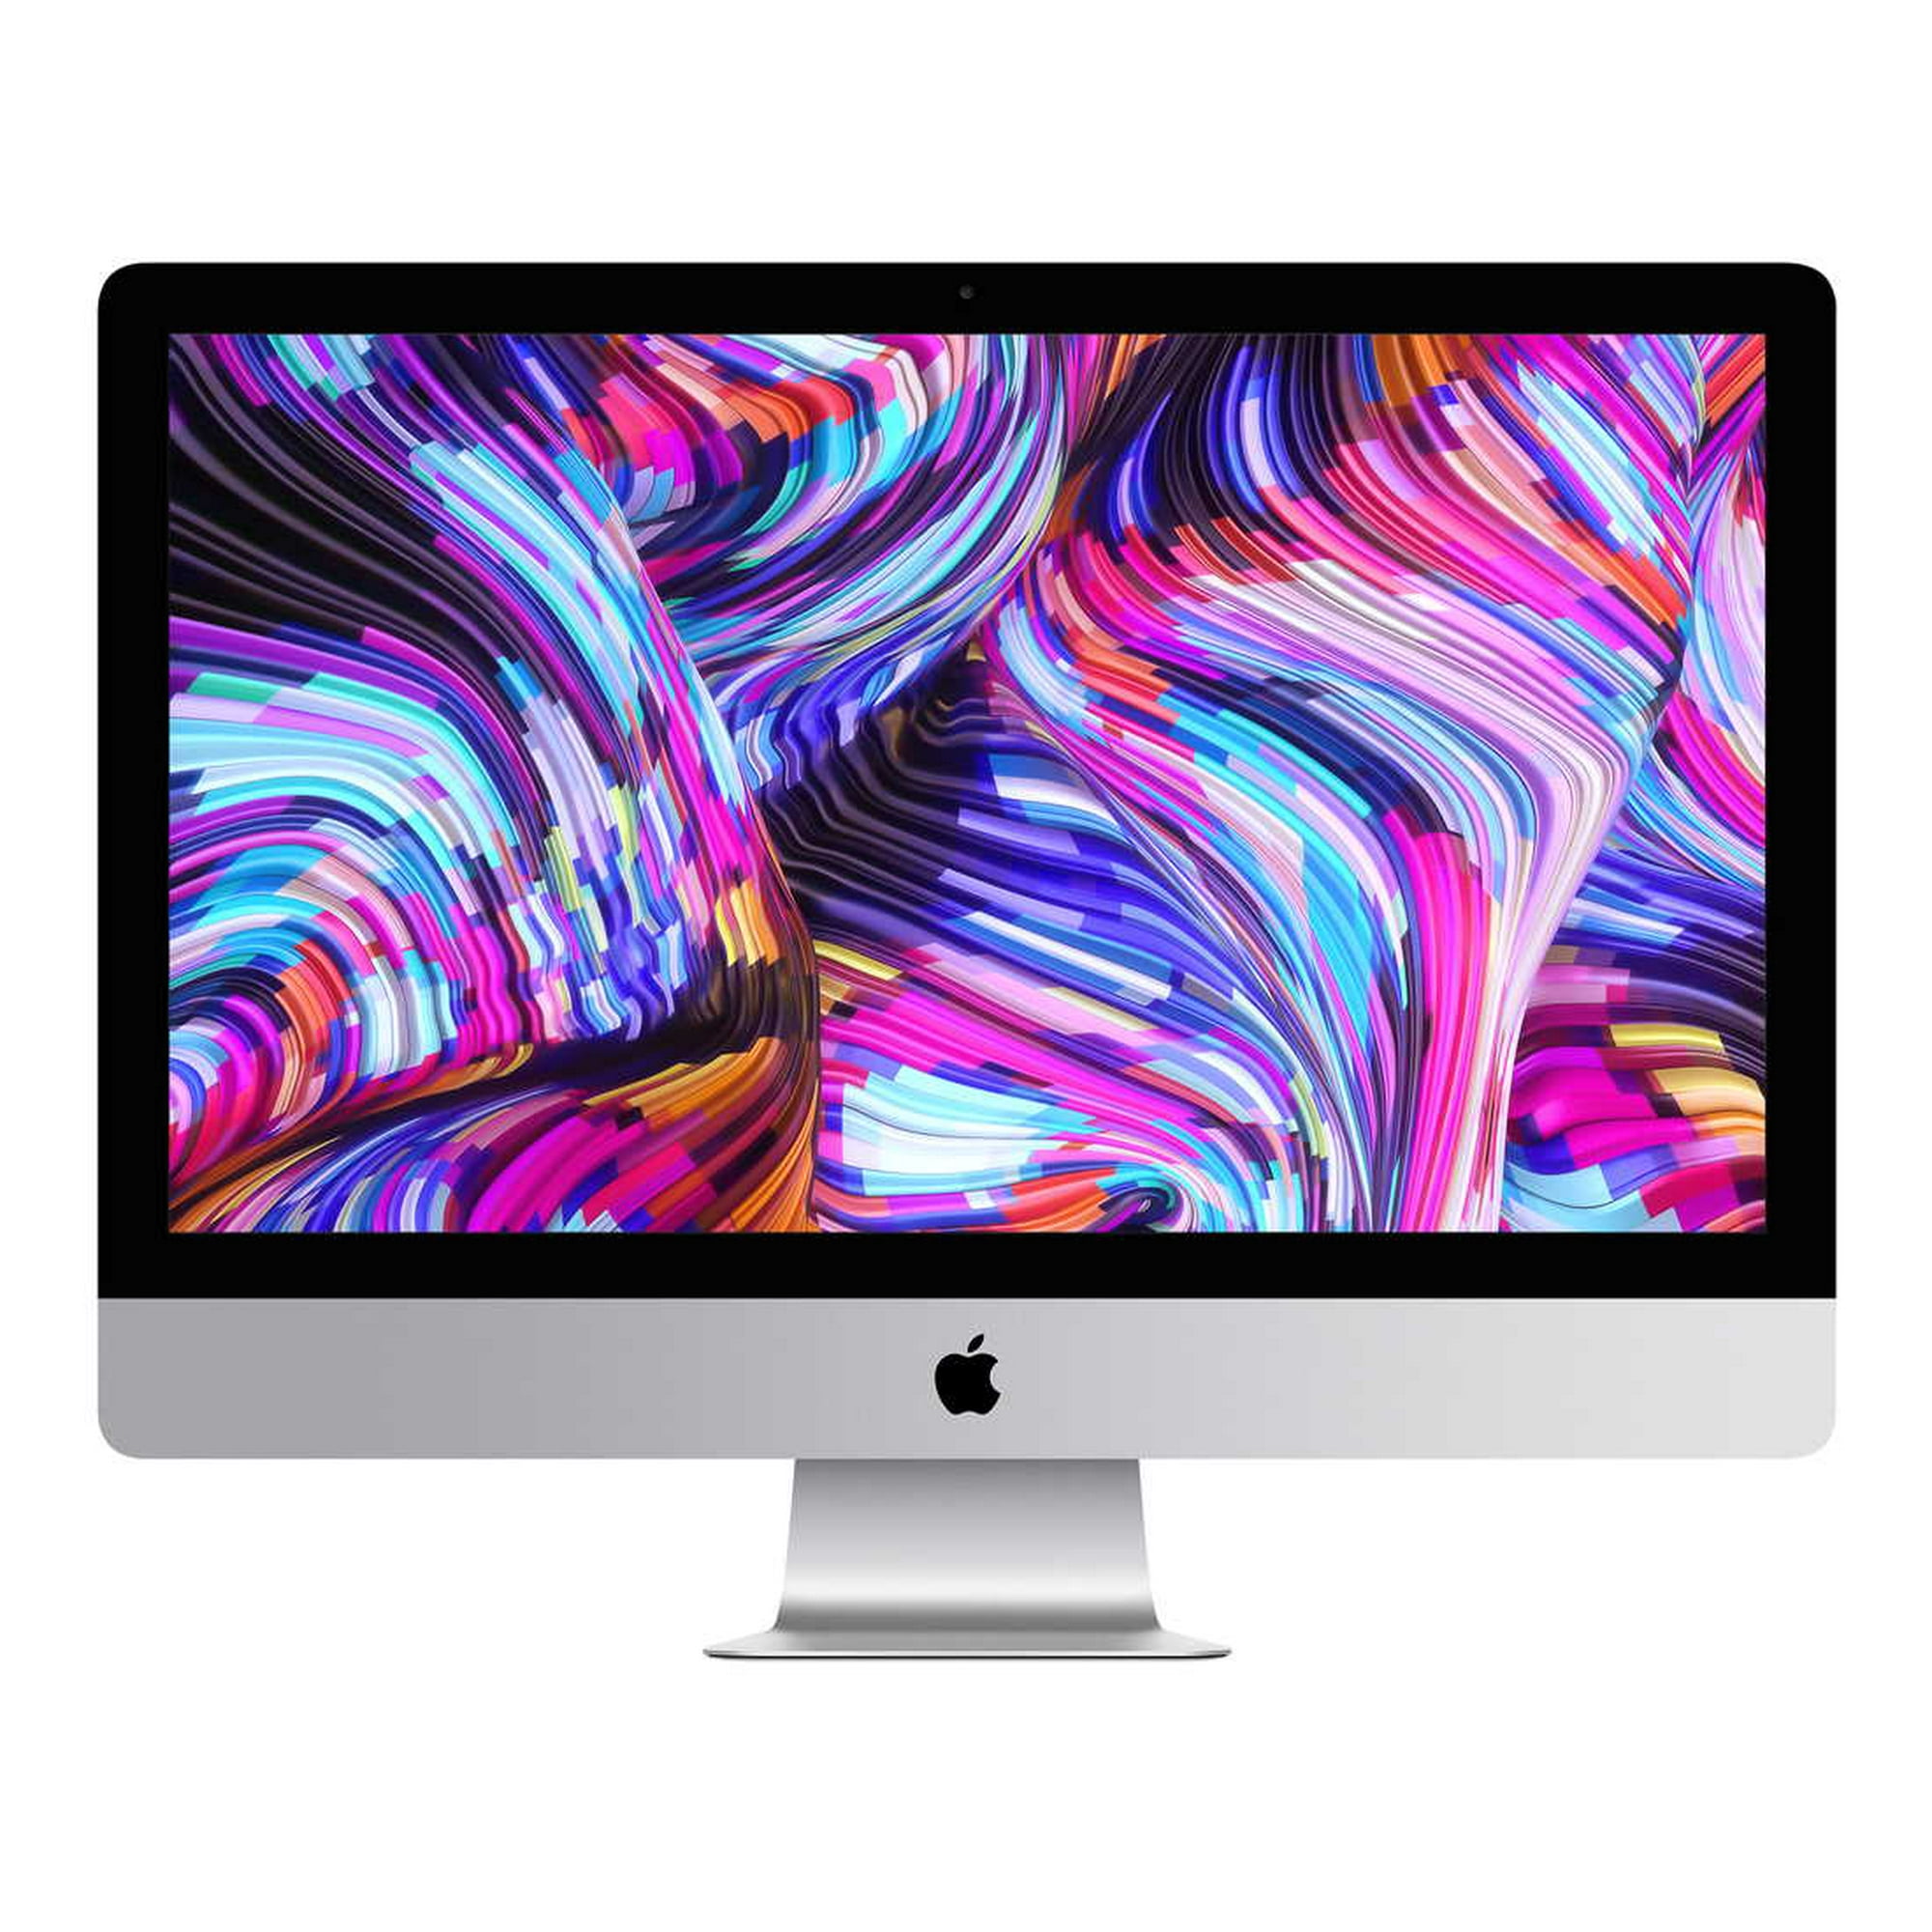 Apple iMac 21.5-inch (Retina 4K) 3.2GHZ 6-Core i7 (2019) Desktop 256 GB  Flash HD & 24GB DDR4 RAM-Mac OS (Certified, 1 Yr Warranty)